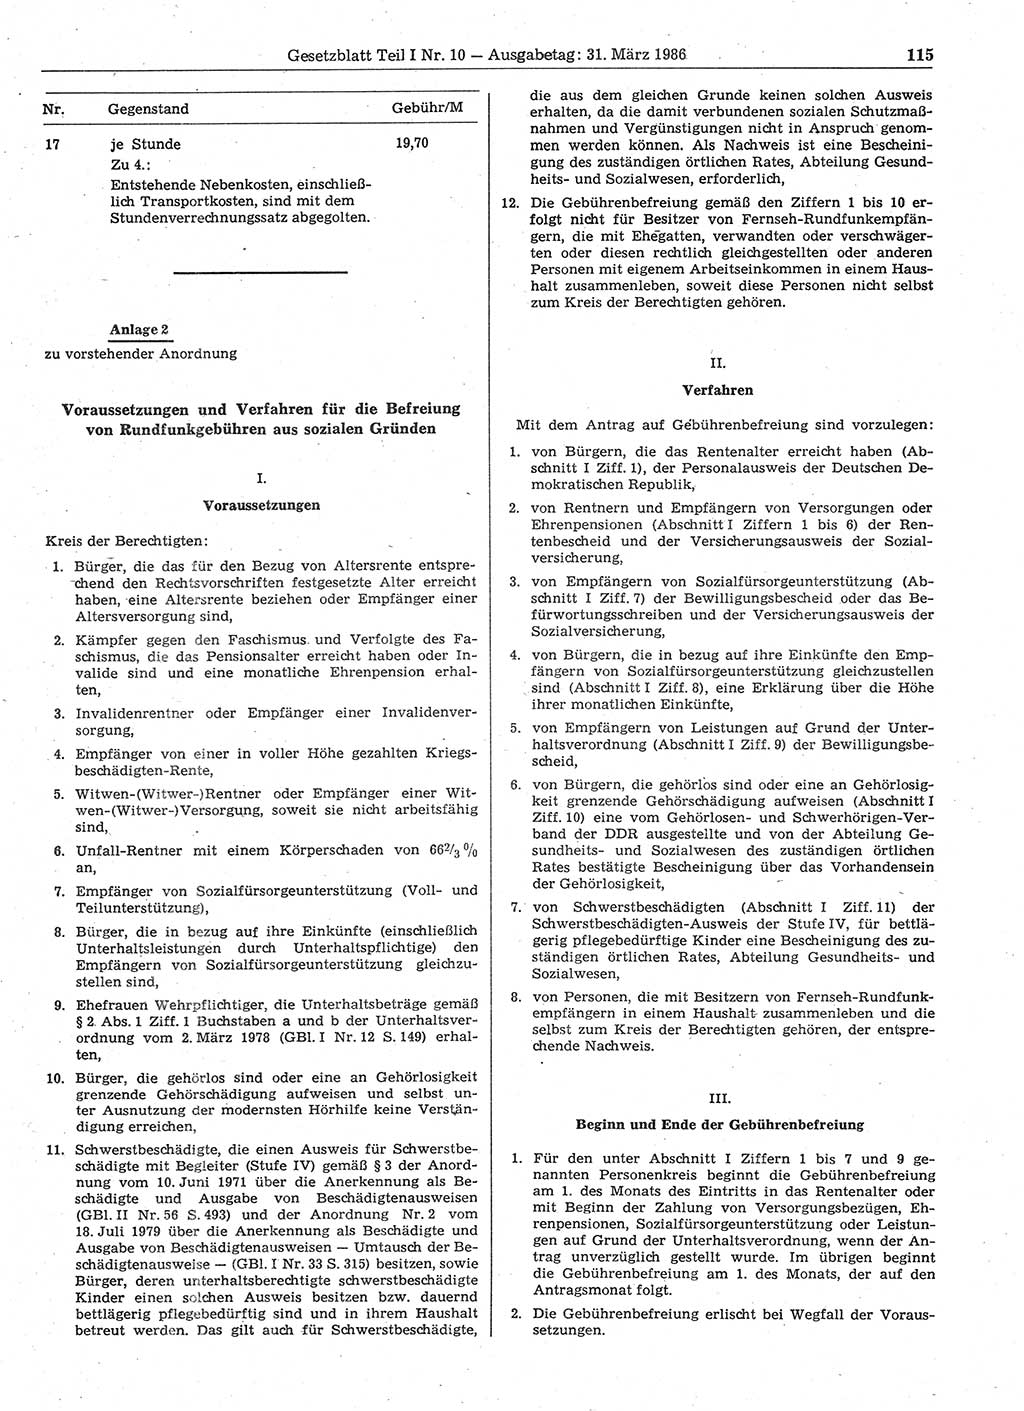 Gesetzblatt (GBl.) der Deutschen Demokratischen Republik (DDR) Teil Ⅰ 1986, Seite 115 (GBl. DDR Ⅰ 1986, S. 115)